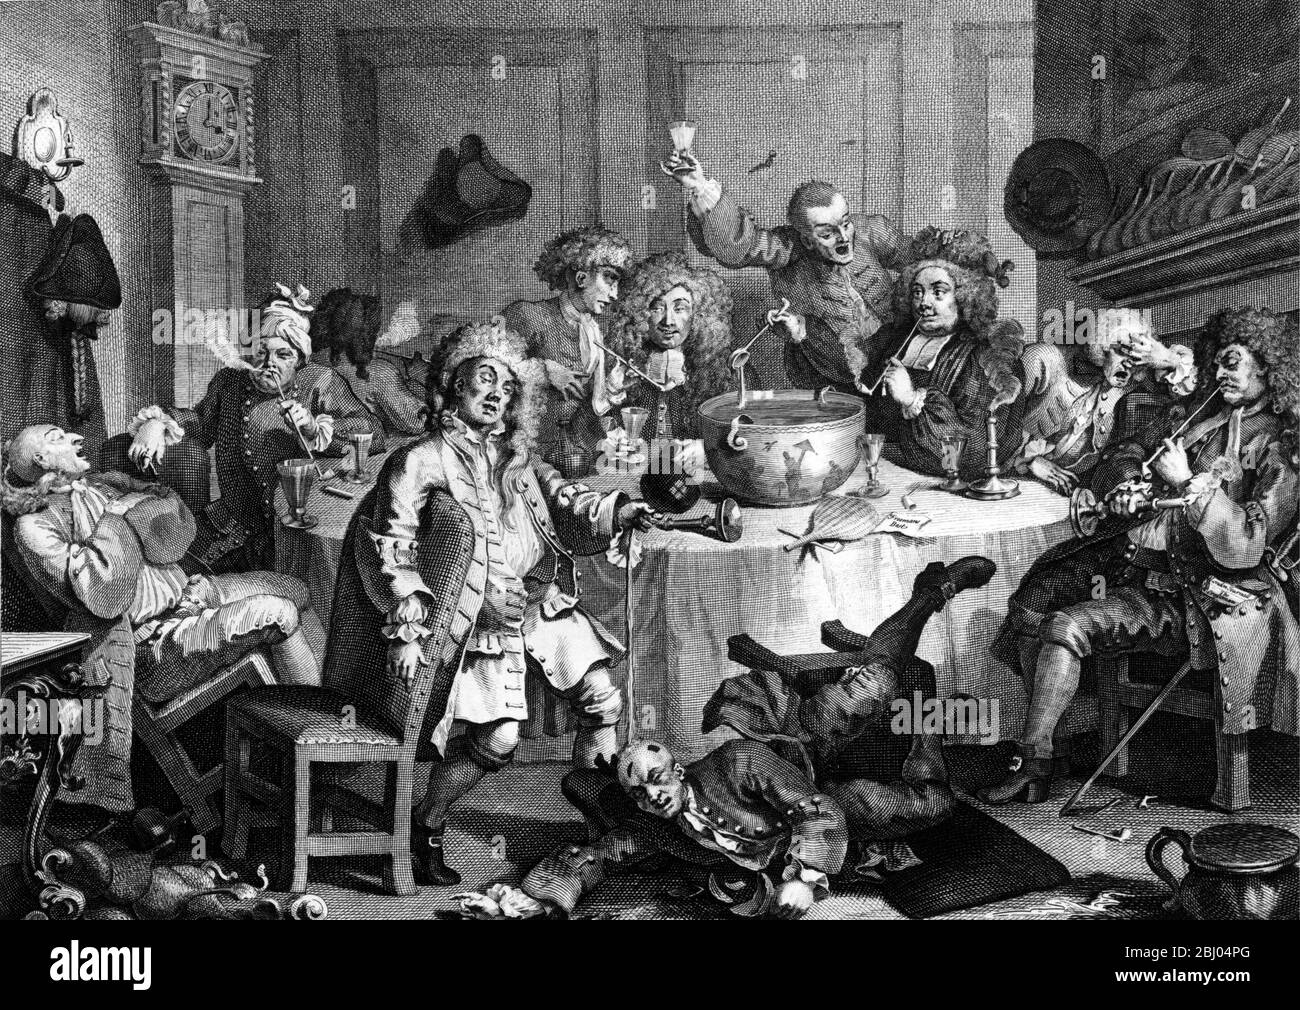 Ein Mitternachtsgespräch von Hogarth - in St John's Coffee House Temple Bar um 4 Uhr morgens - Parson Cornelius Ford zentraler Charakter (Johnsons unseriöse Cousine) - Tabakladen John? Ford's Freund - 1732-1733 Stockfoto